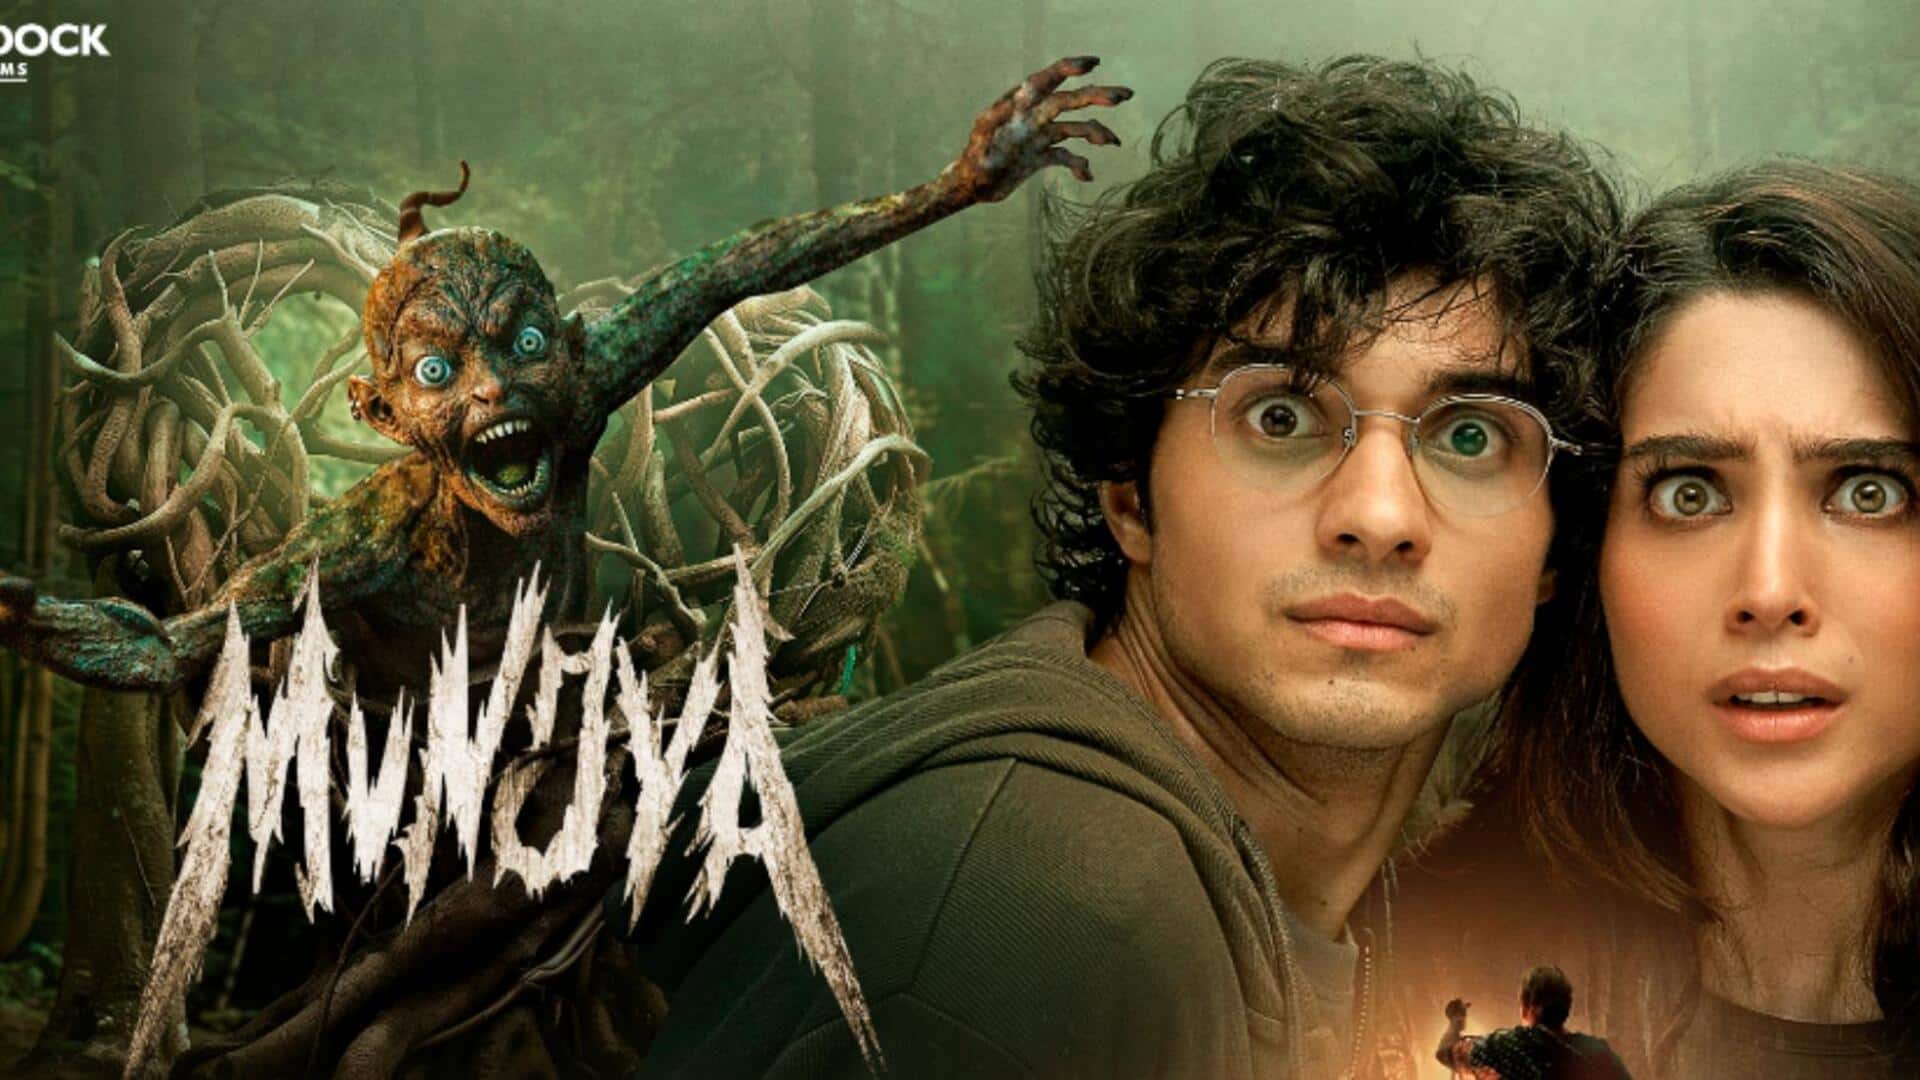 शरवरी वाघ की 'मुंज्या' का ट्रेलर जारी, जानिए कब रिलीज होगी यह हॉरर-कॉमेडी फिल्म 